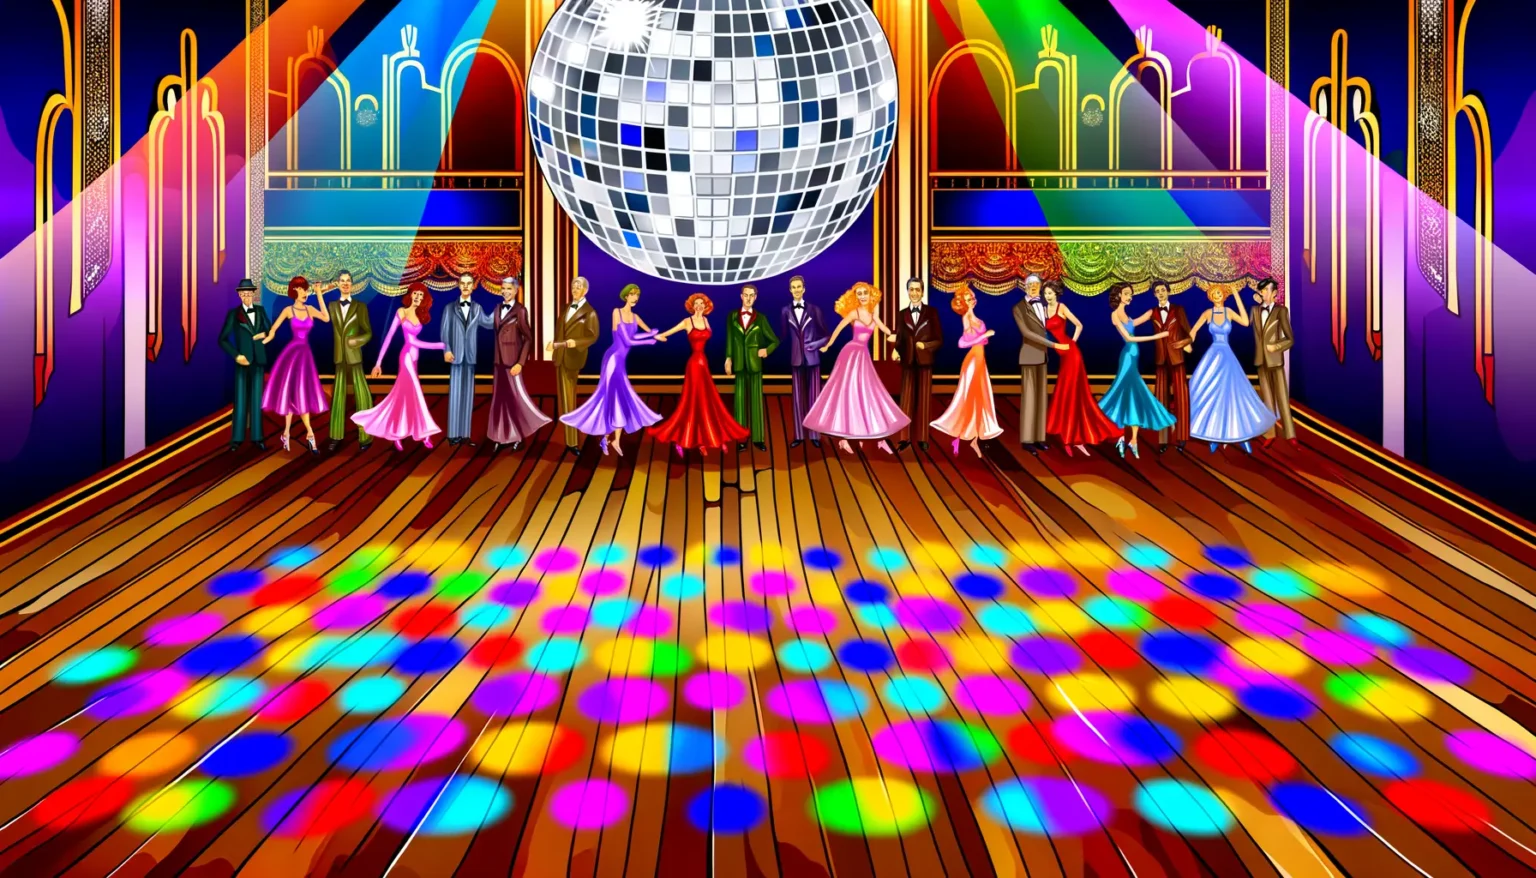 Eine bunte, lebhafte Szene eines Ballsaals mit elegant gekleideten Paaren, die auf einem Holztanzboden unter einer glitzernden Diskokugel tanzen. Reflektierte Lichter in verschiedenen Farben zieren den Boden und erzeugen eine lebendige Atmosphäre. Der Raum ist reich verziert mit purpurnen, blauen und goldenen Akzenten und Vorhängen, die einen luxuriösen Hintergrund bieten.